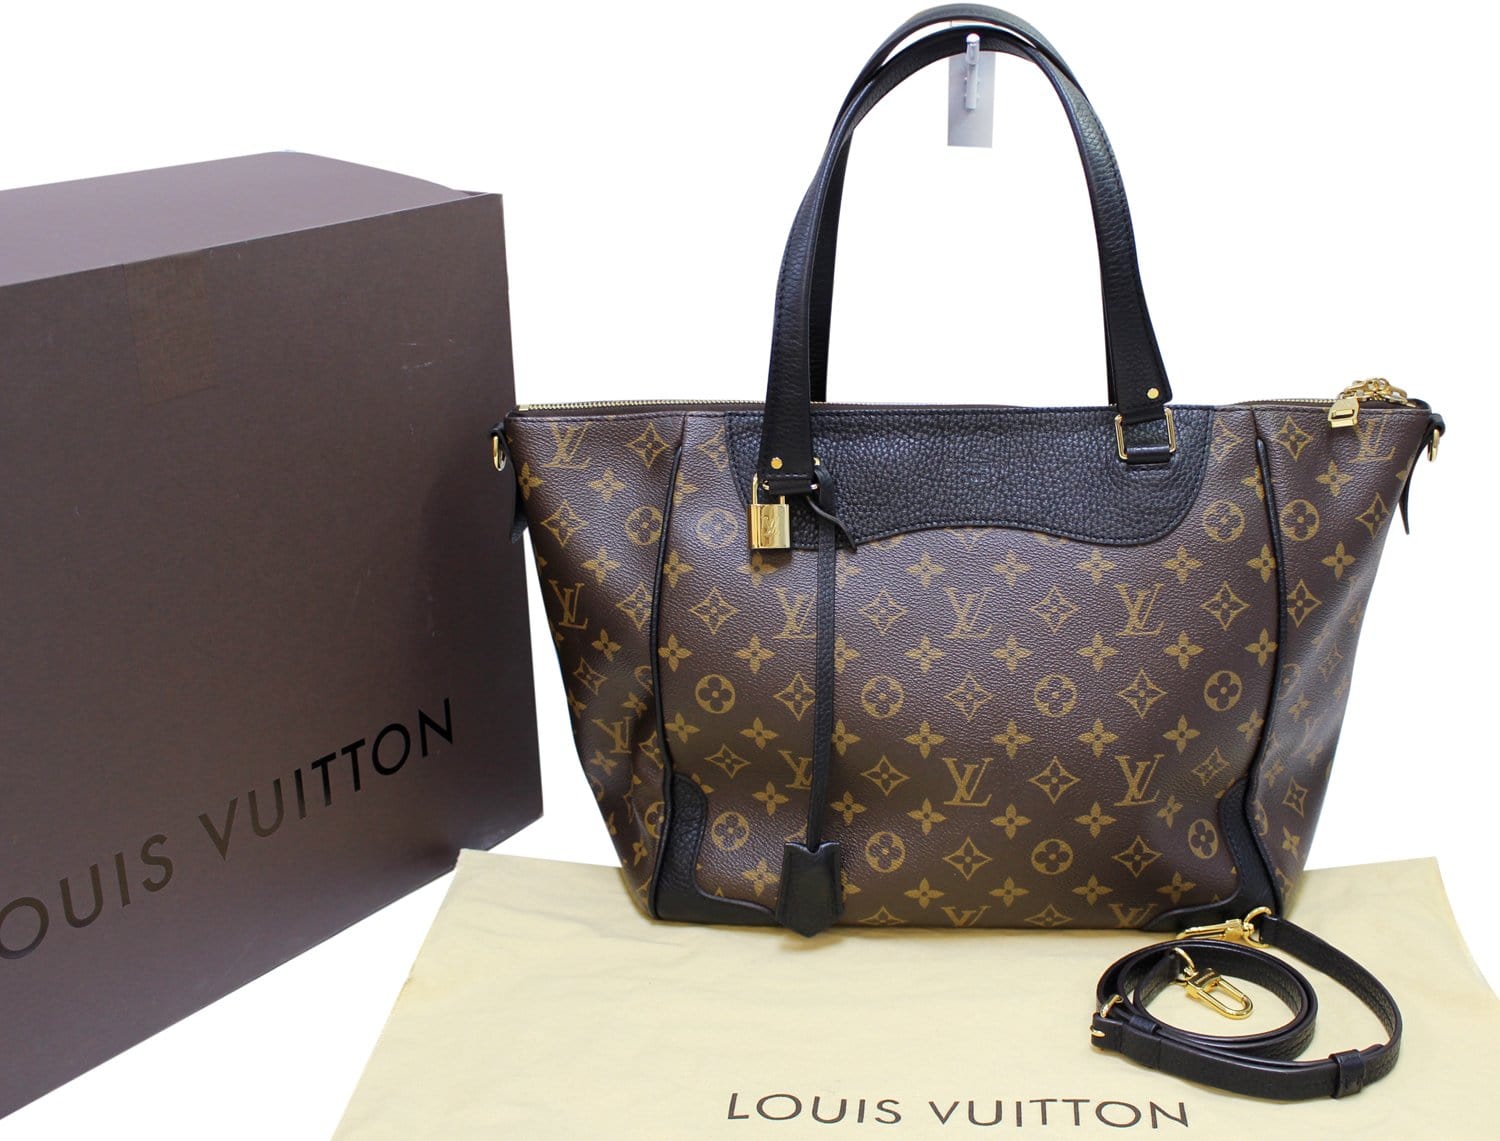 Sold at Auction: Louis Vuitton Black Leather Shoulder Bag - Large Monogram  Estrela Tote w/ Strap